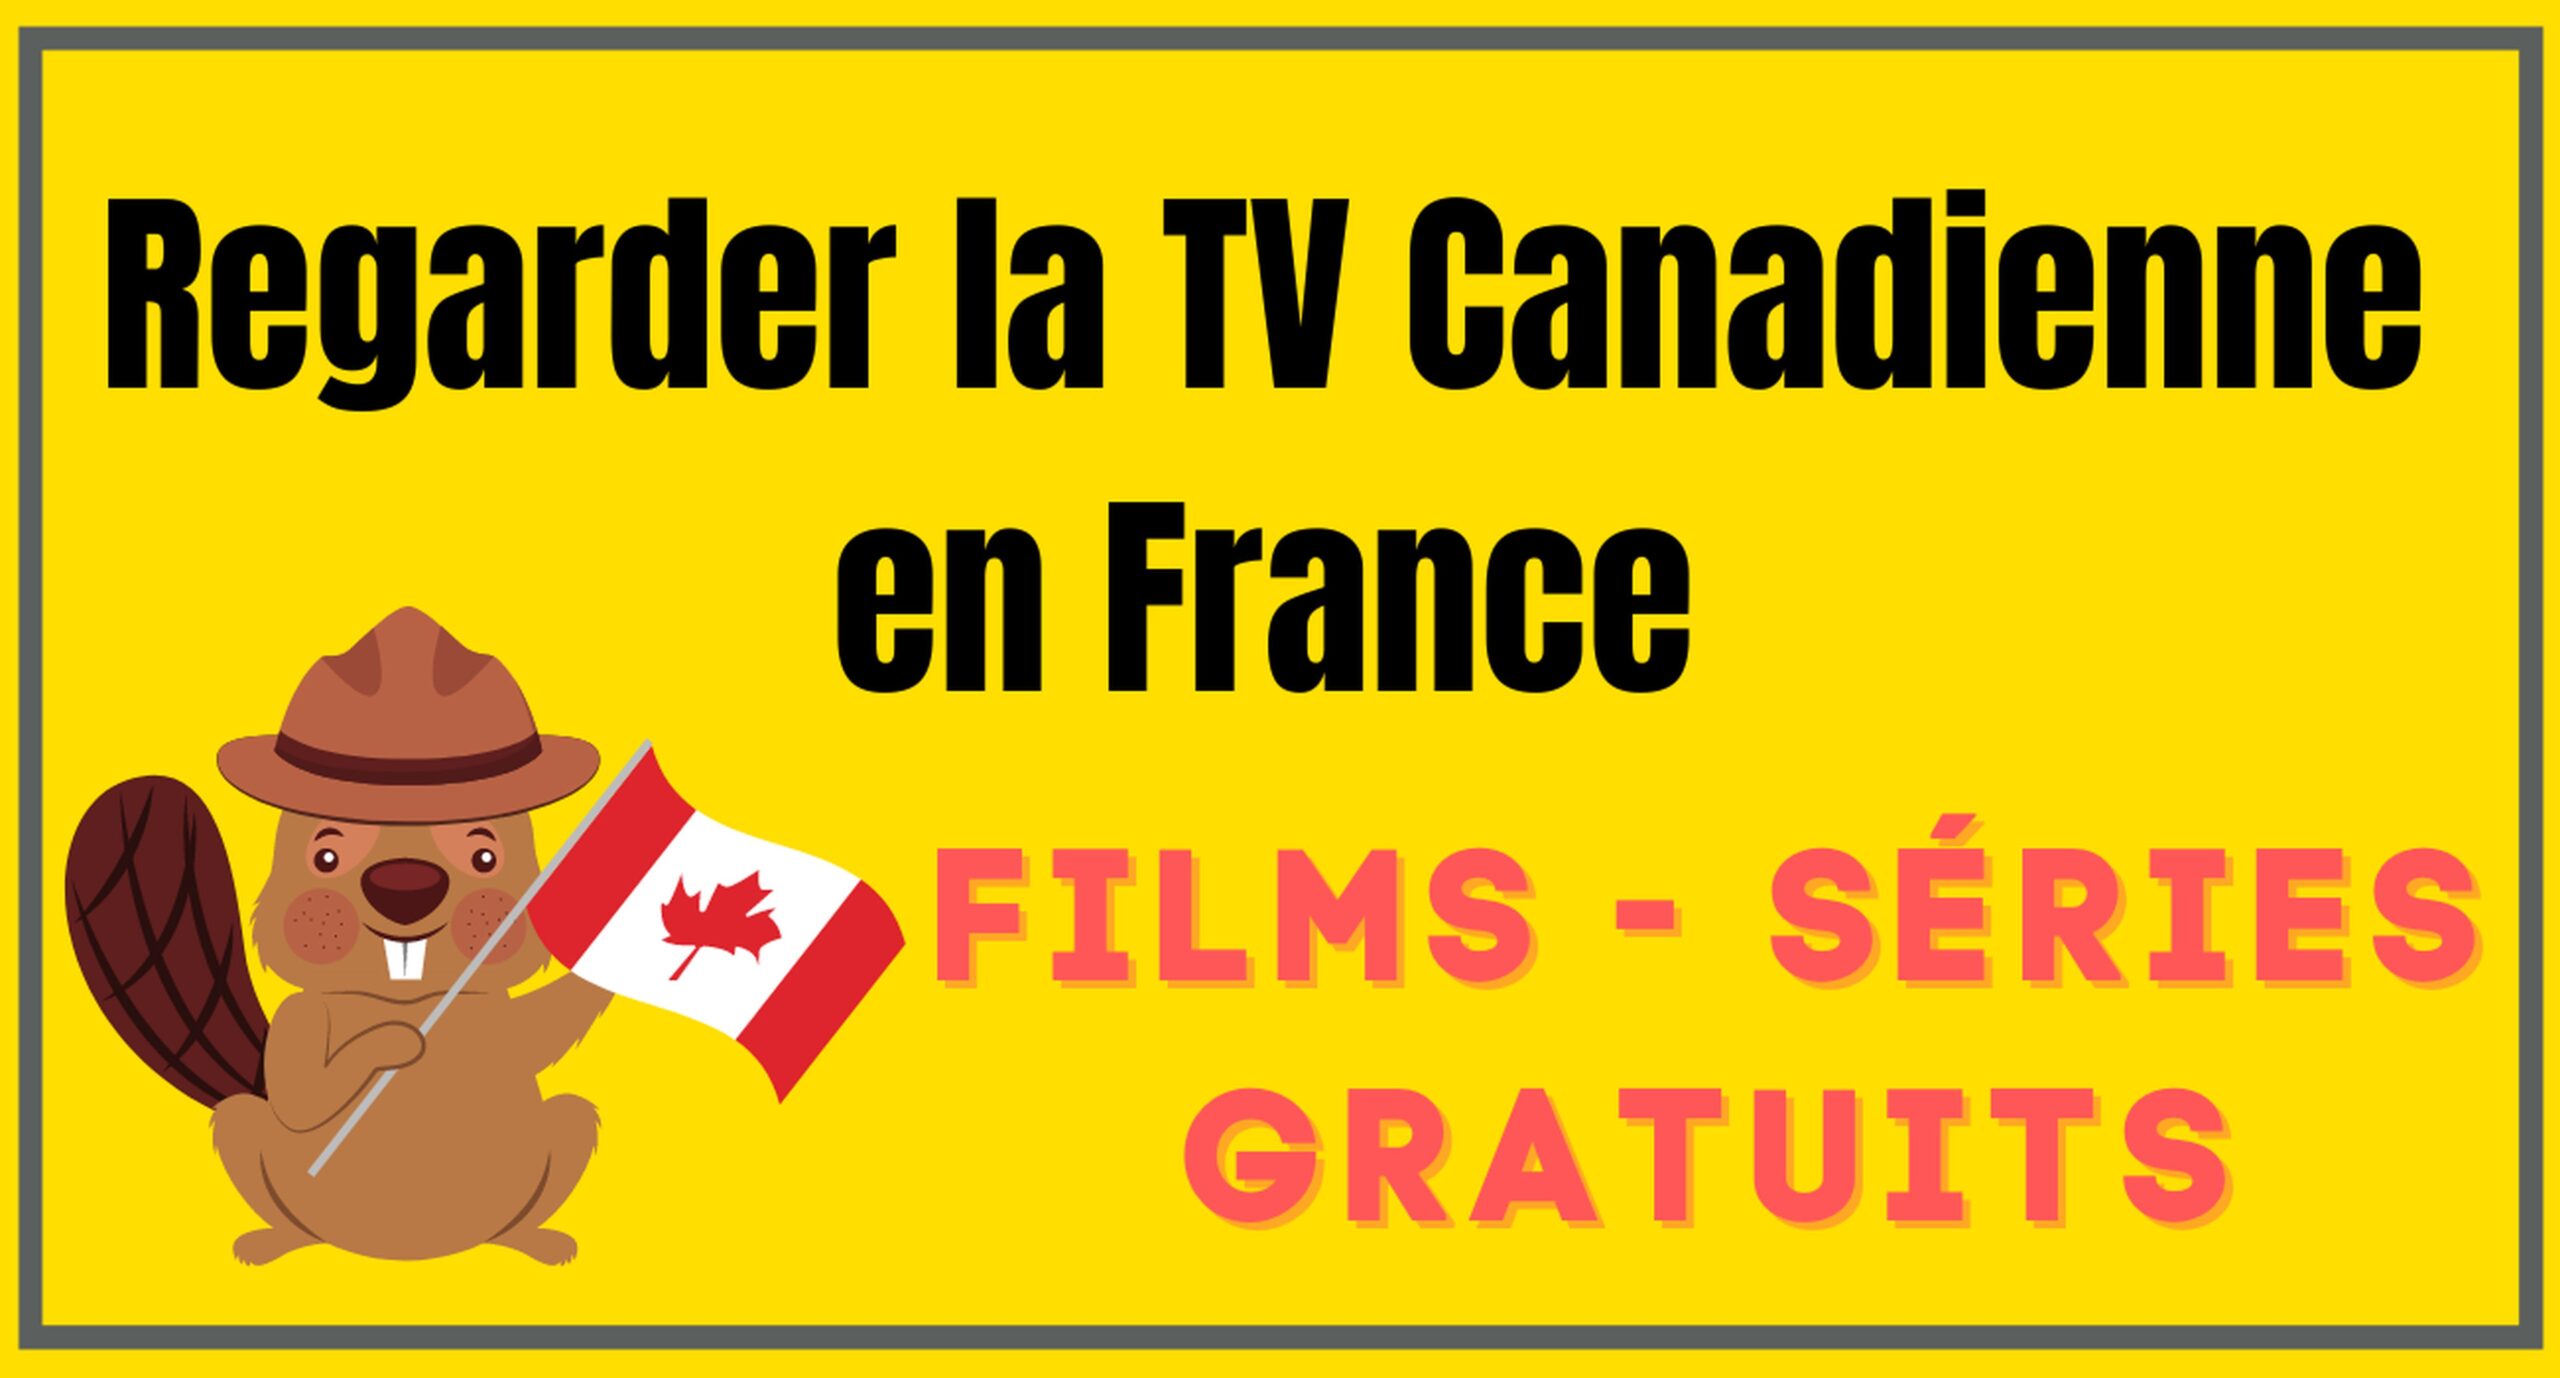 Regarder la télévision canadienne en France